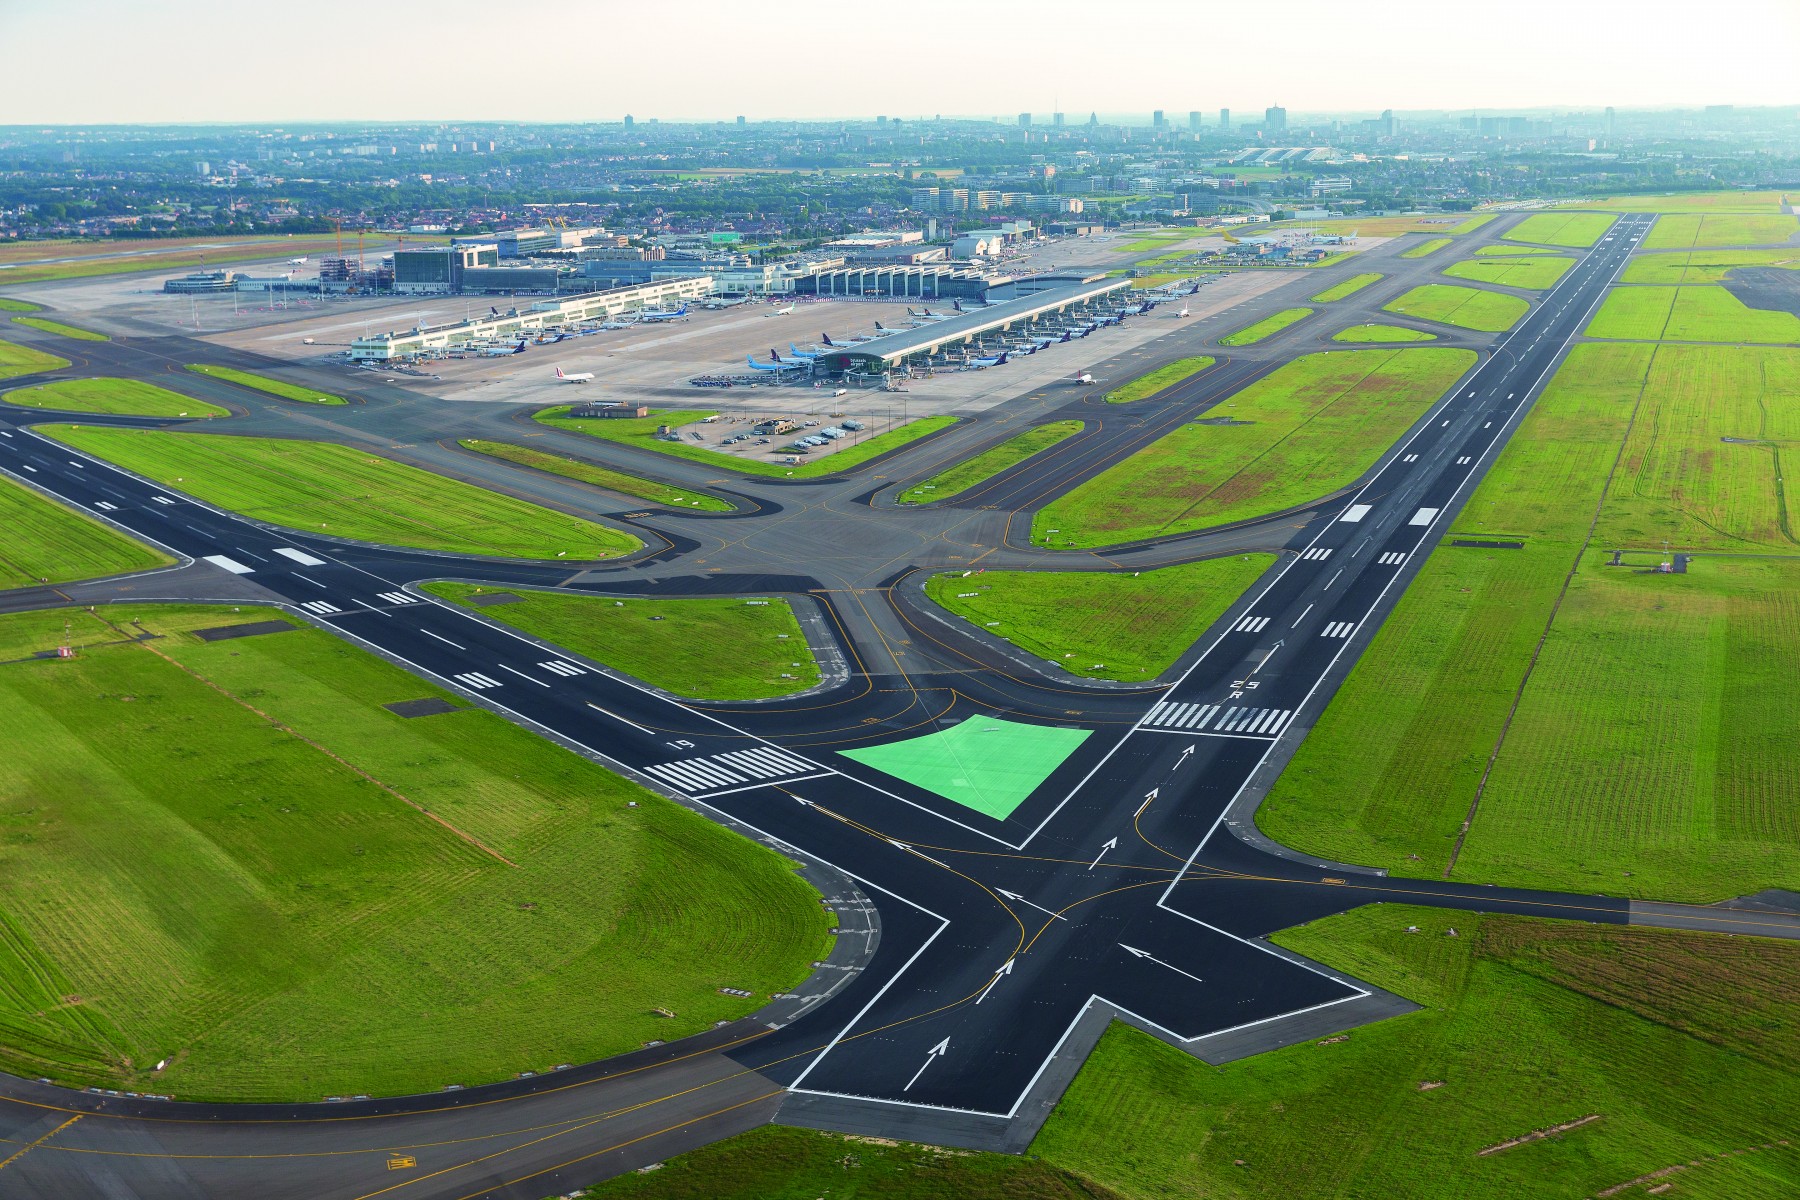 Der Flughafen Brüssel organisiert eine Informationsveranstaltung für Anwohner zum Antrag auf Verlängerung der Genehmigung und zum Entwurf einer Umweltverträglichkeitsprüfung